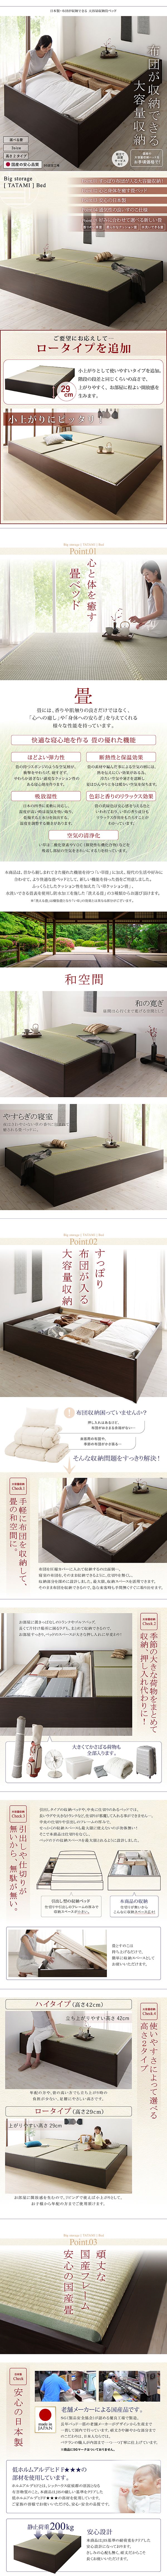 日本製・布団が収納できる大容量収納畳ベッド 悠華 Yuhana ユハナ